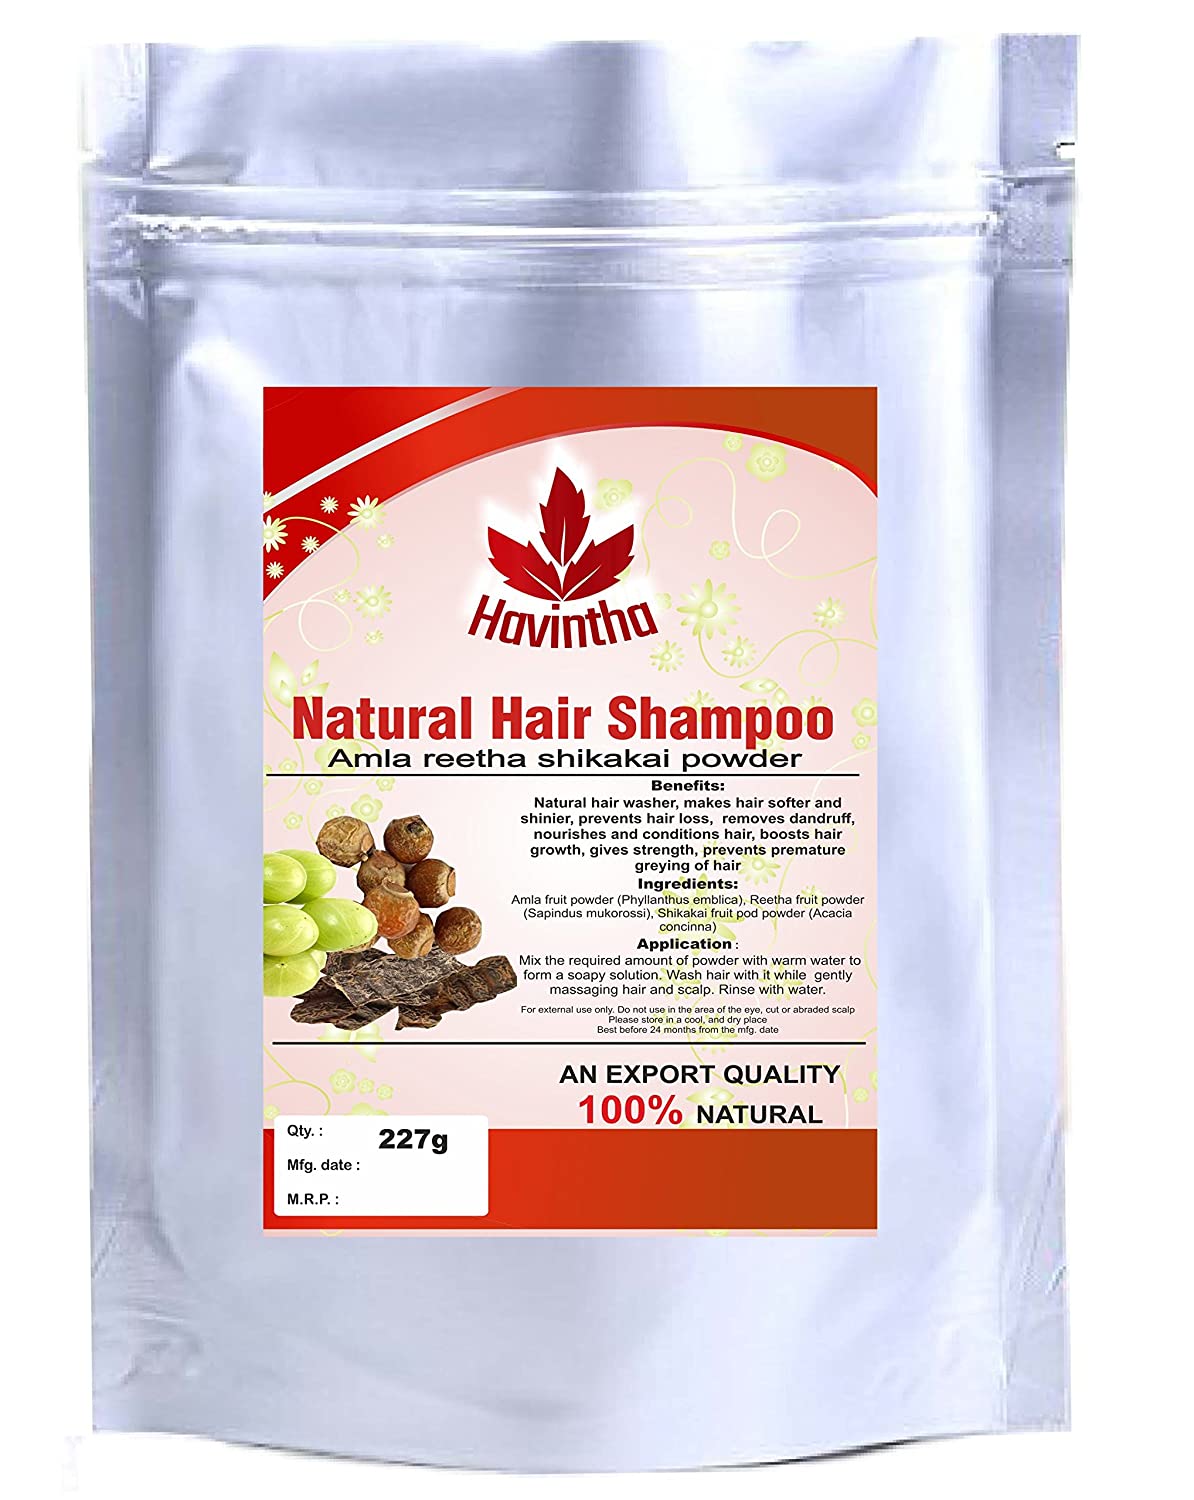 Havintha natural hair shampoo Review In hindi